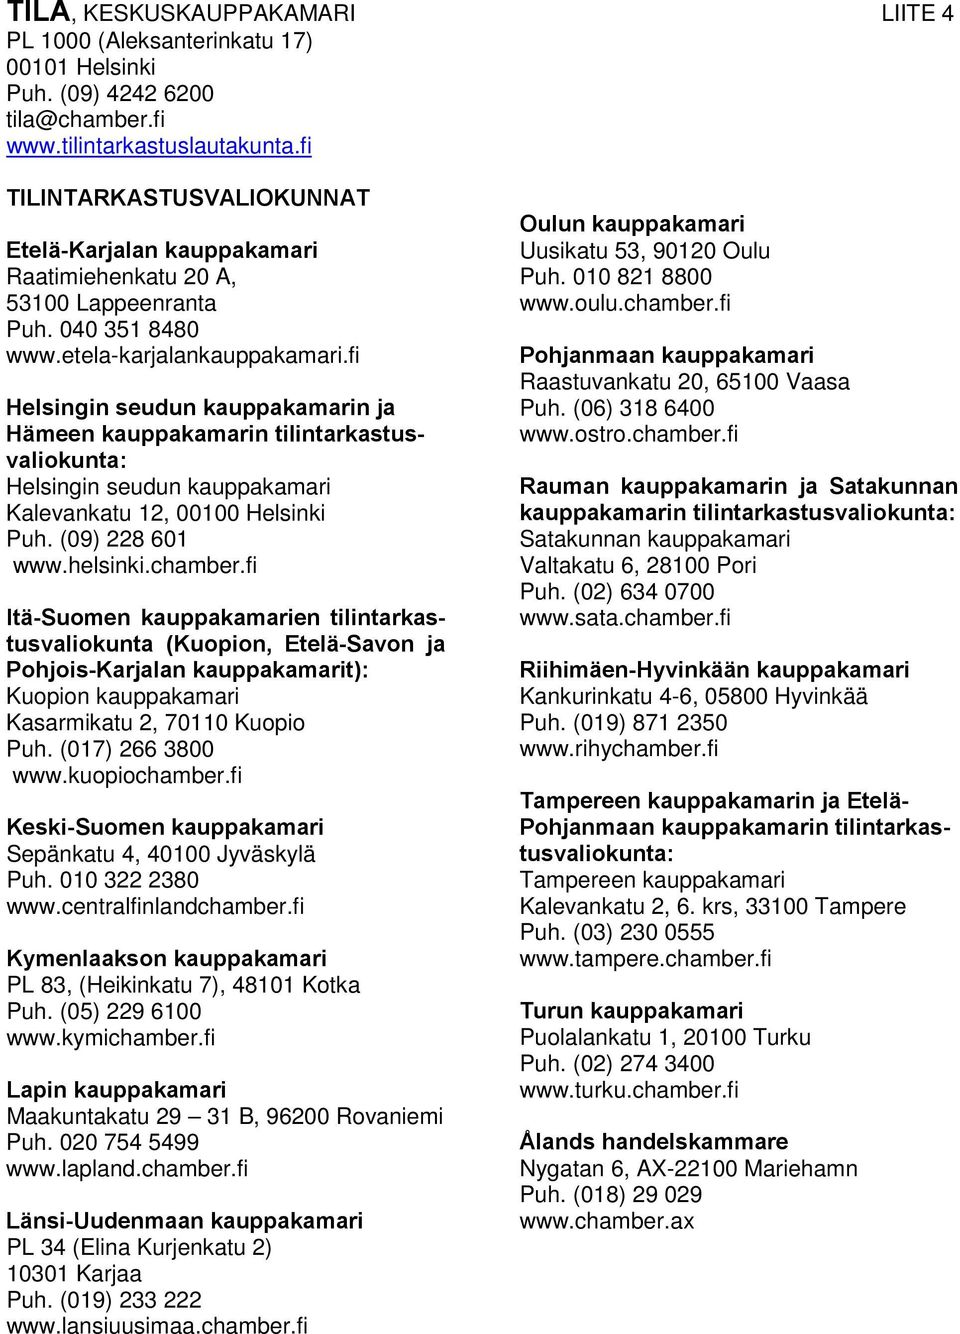 fi Helsingin seudun kauppakamarin ja Hämeen kauppakamarin tilintarkastusvaliokunta: Helsingin seudun kauppakamari Kalevankatu 12, 00100 Helsinki Puh. (09) 228 601 www.helsinki.chamber.